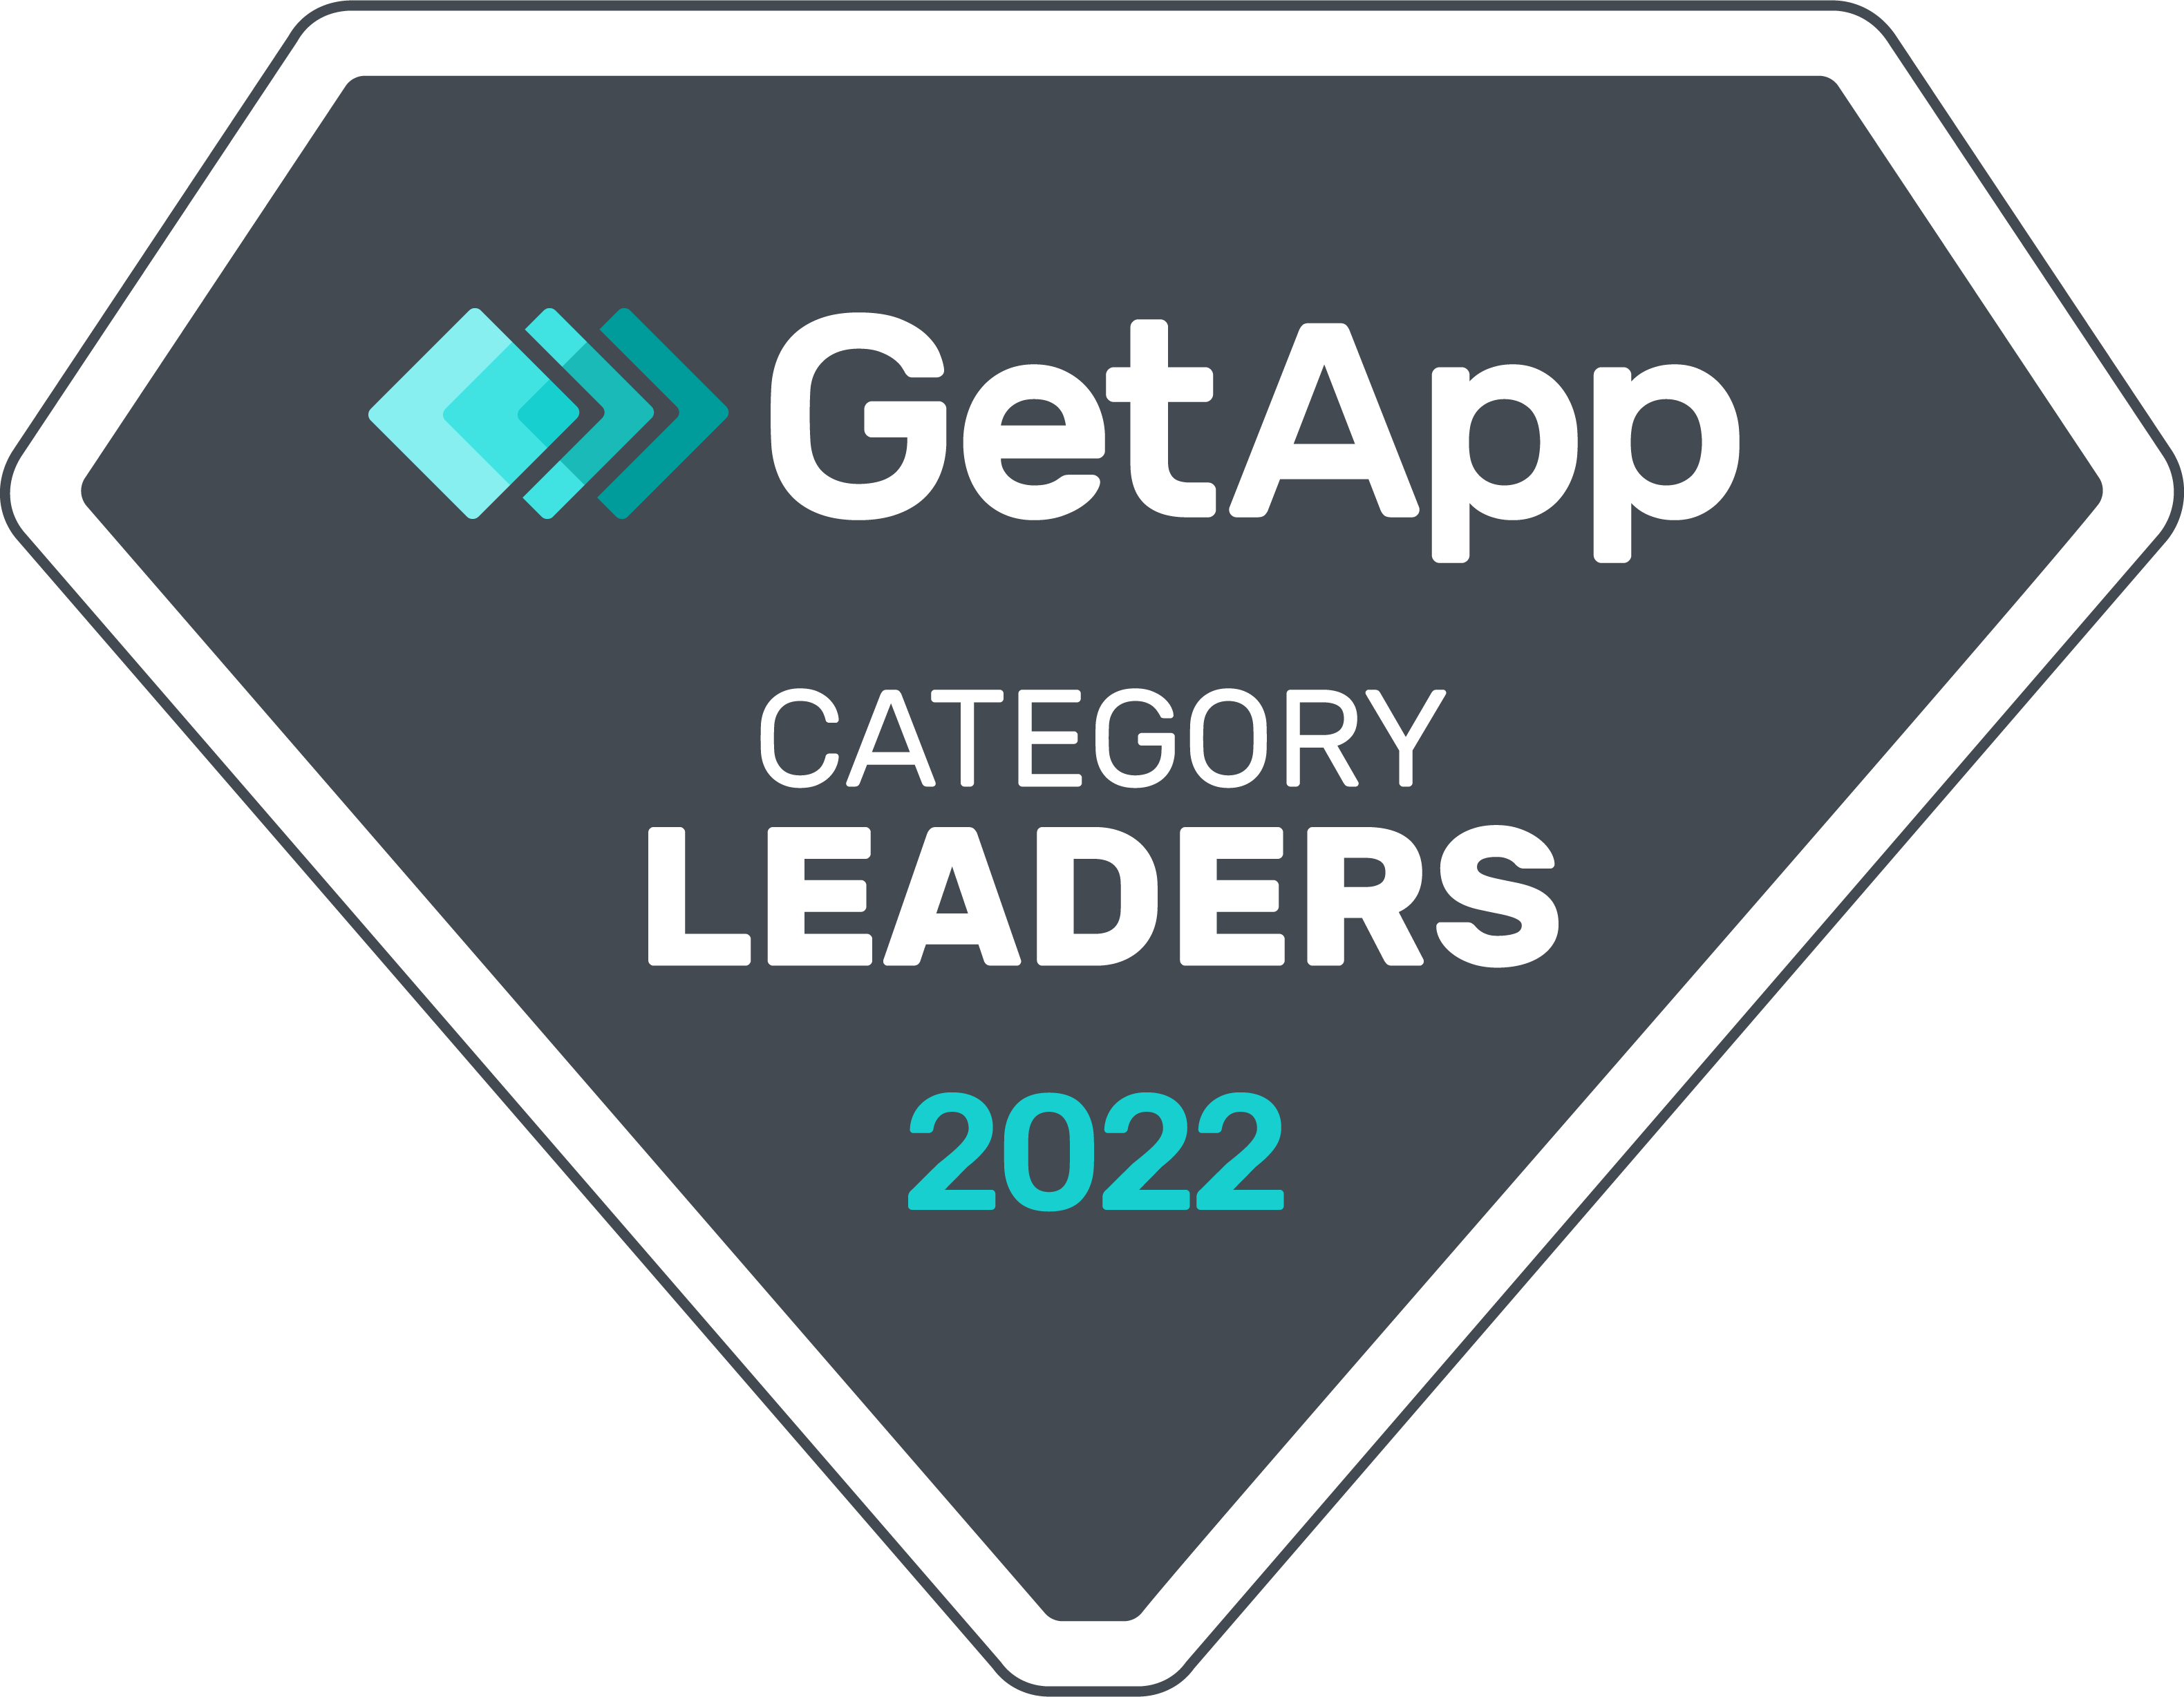 RXNT Awarded GetApp Category Leader 2022 for Healthcare EHR, ERX, Practice Management, Patient Portal Billing Software